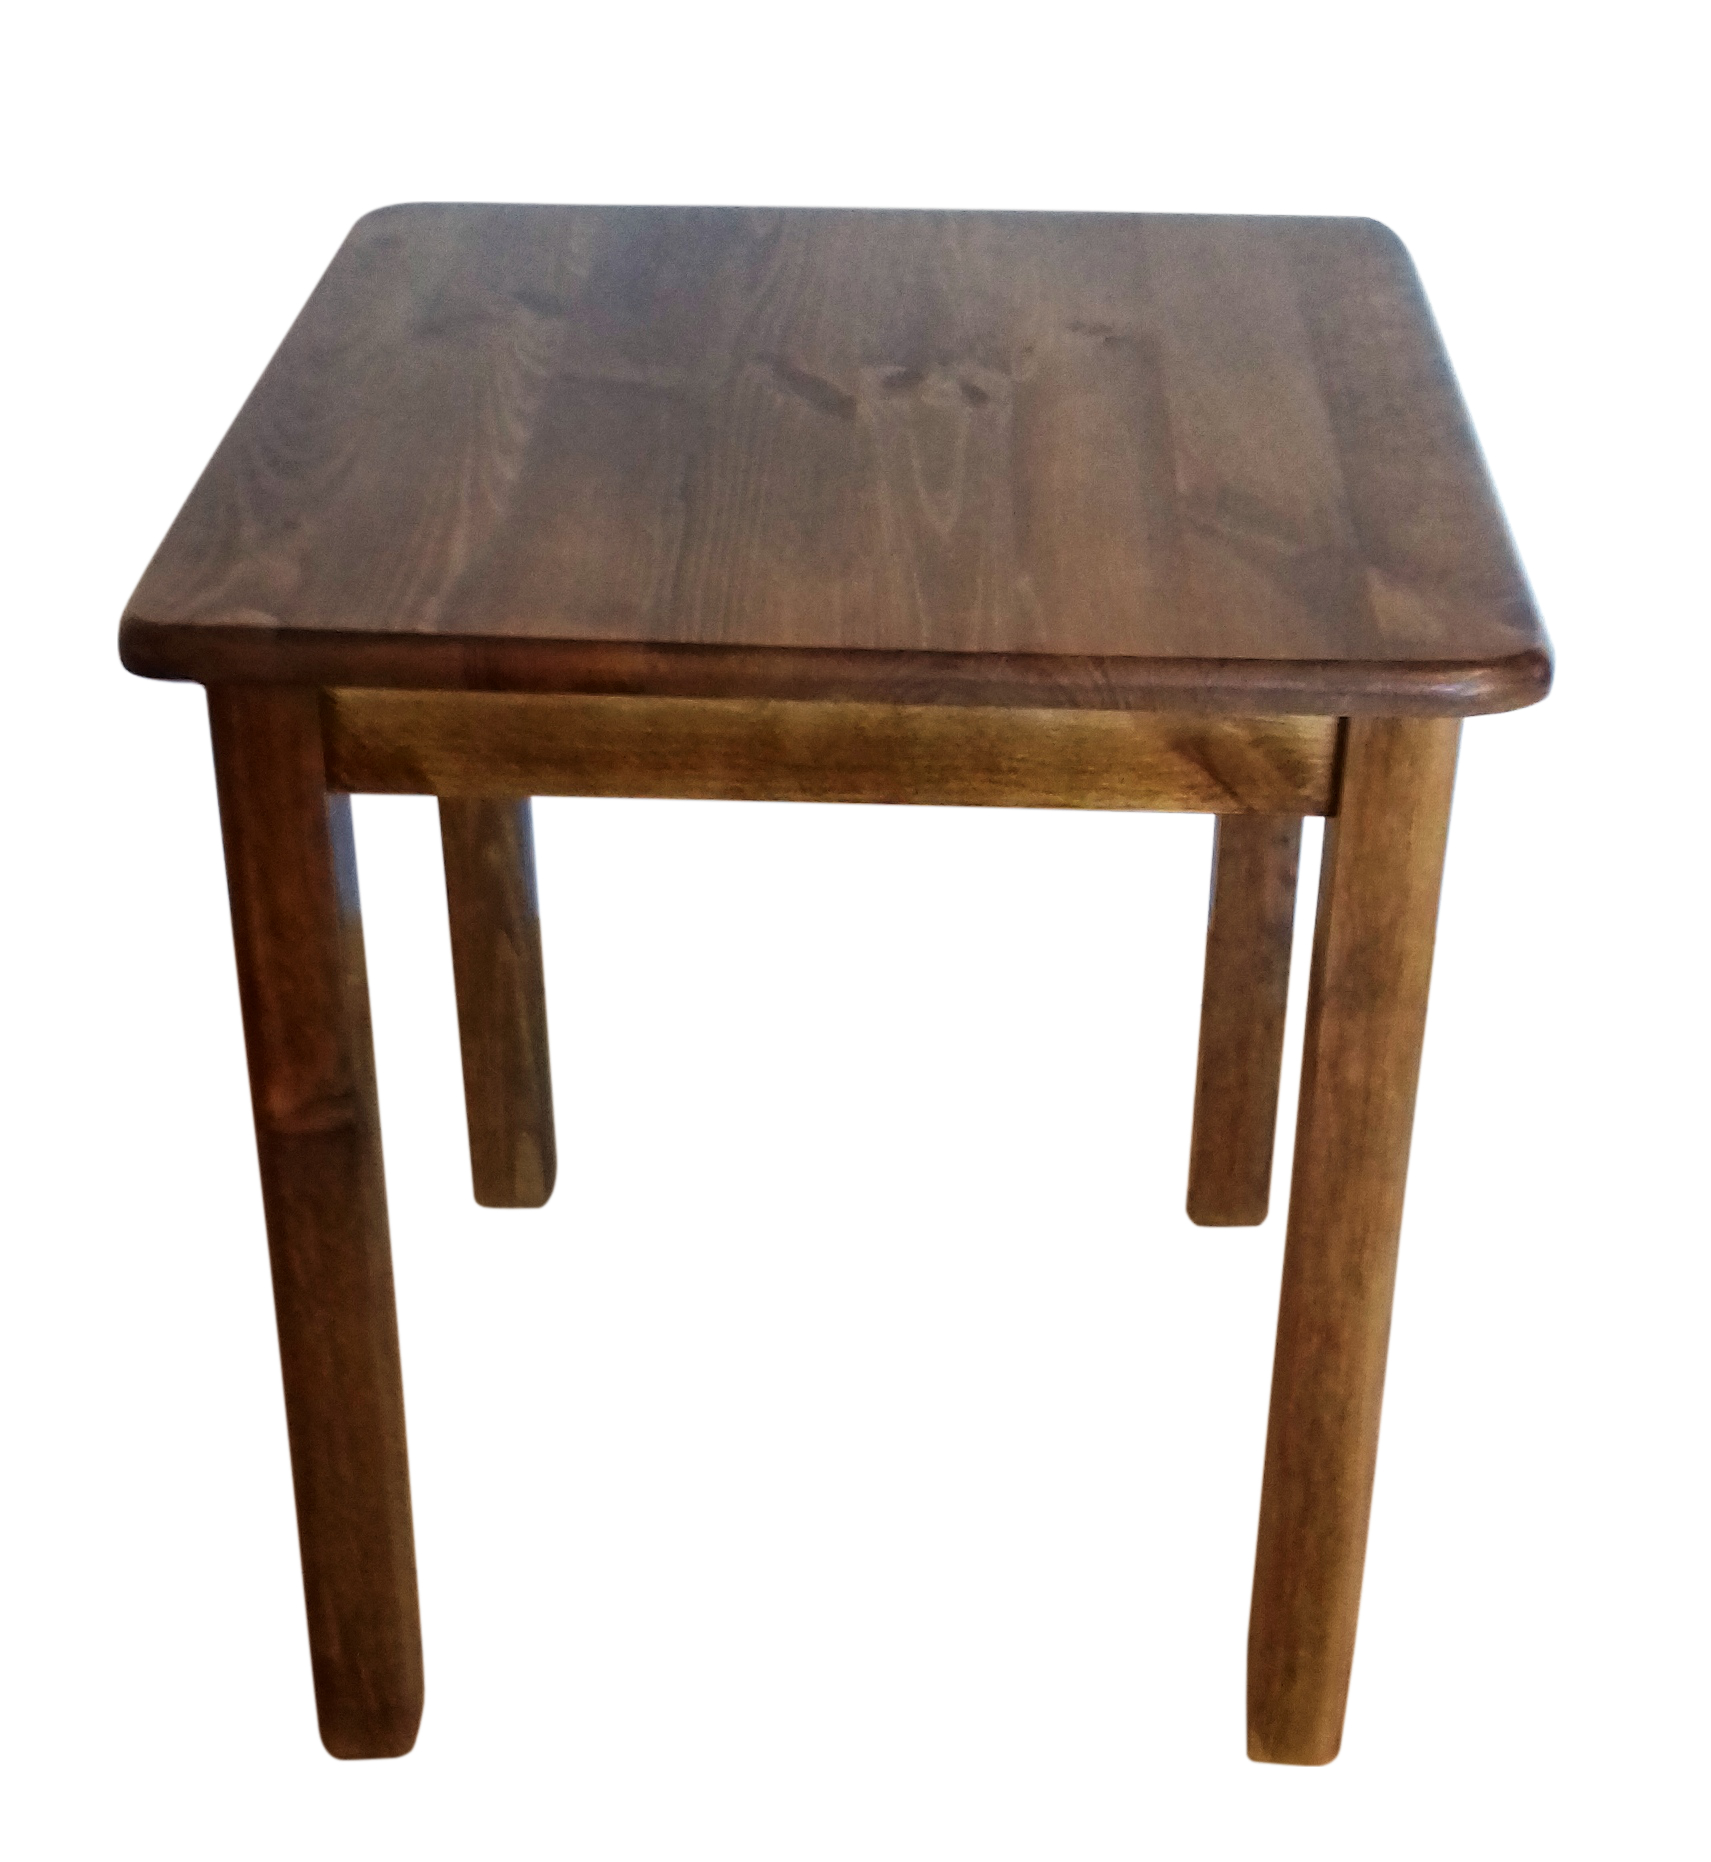 Стол кухонный 110 70. Стол нераскладной 110х70. Стол квадратный деревянный. Стол кухонный деревянный прямоугольный. Стол кухонный 70х70.